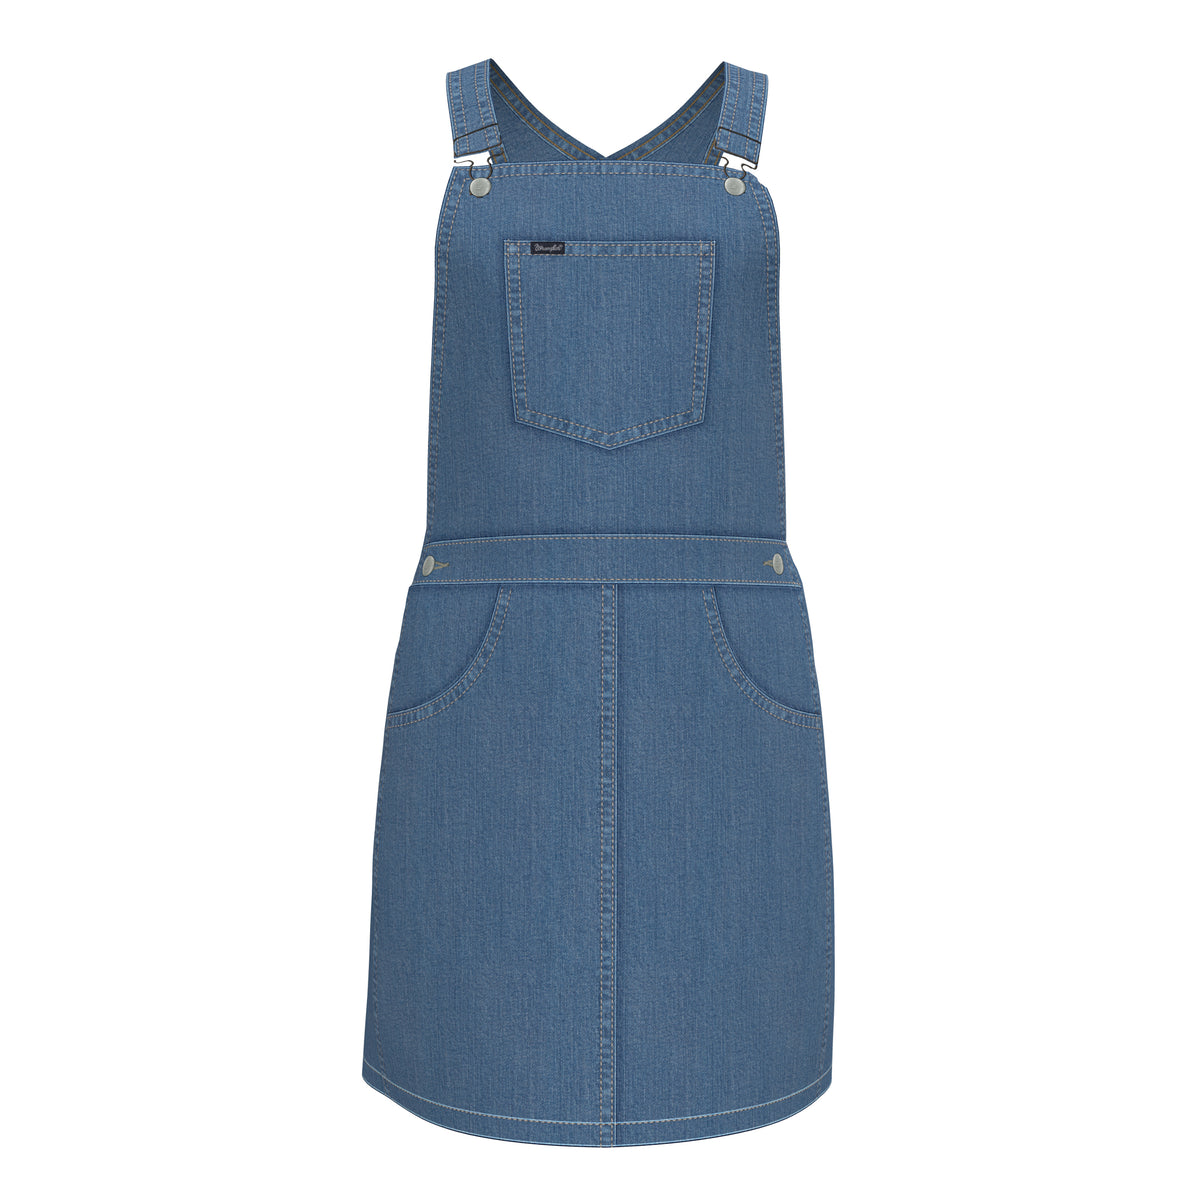 Wrangler Denim Overall Dress - 09GWKDN – BJ's Western Store